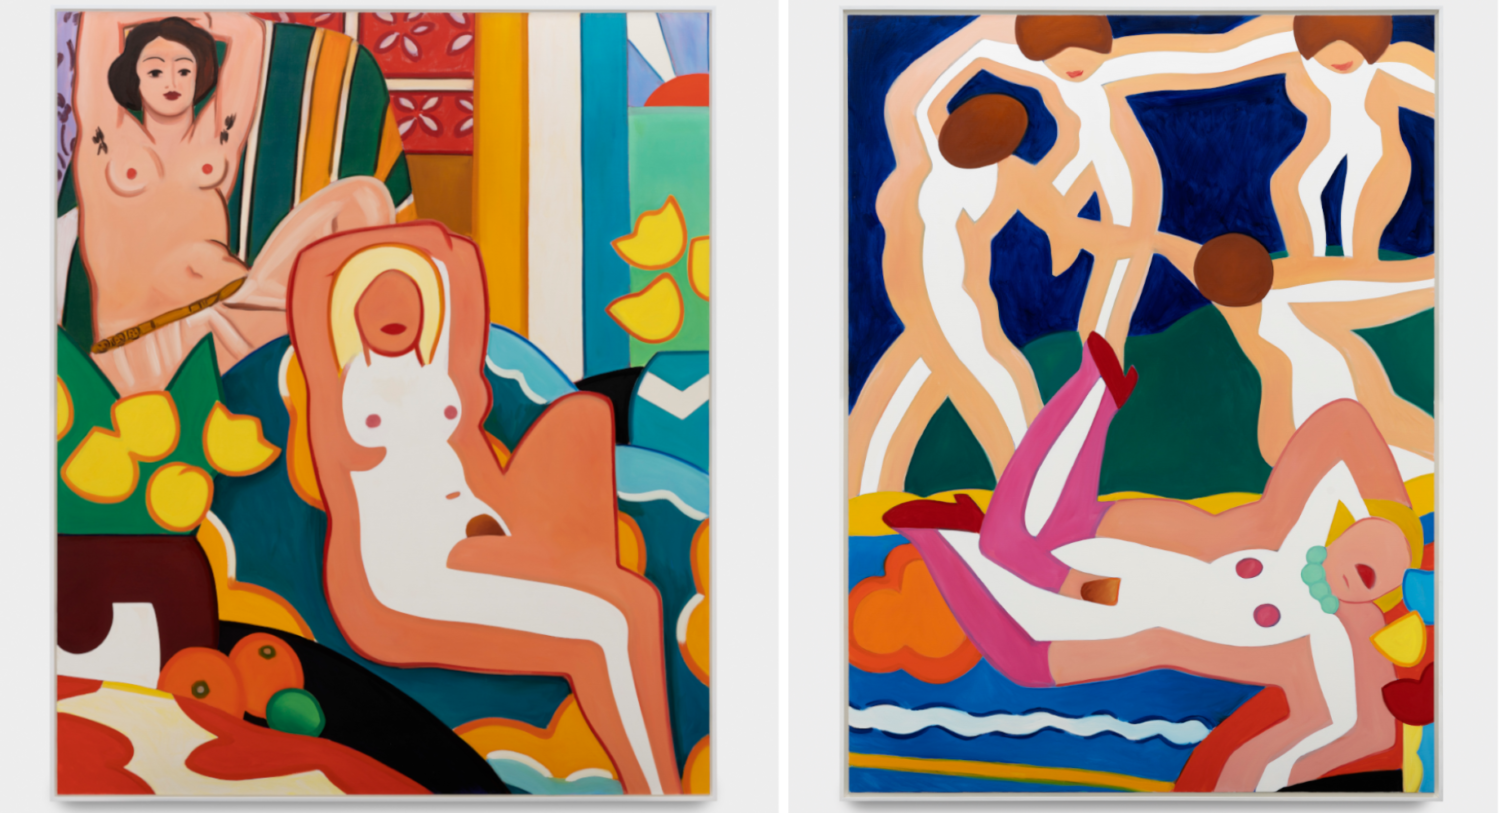 Zwei farbenfrohe Gemälde von Tom Wesselmann